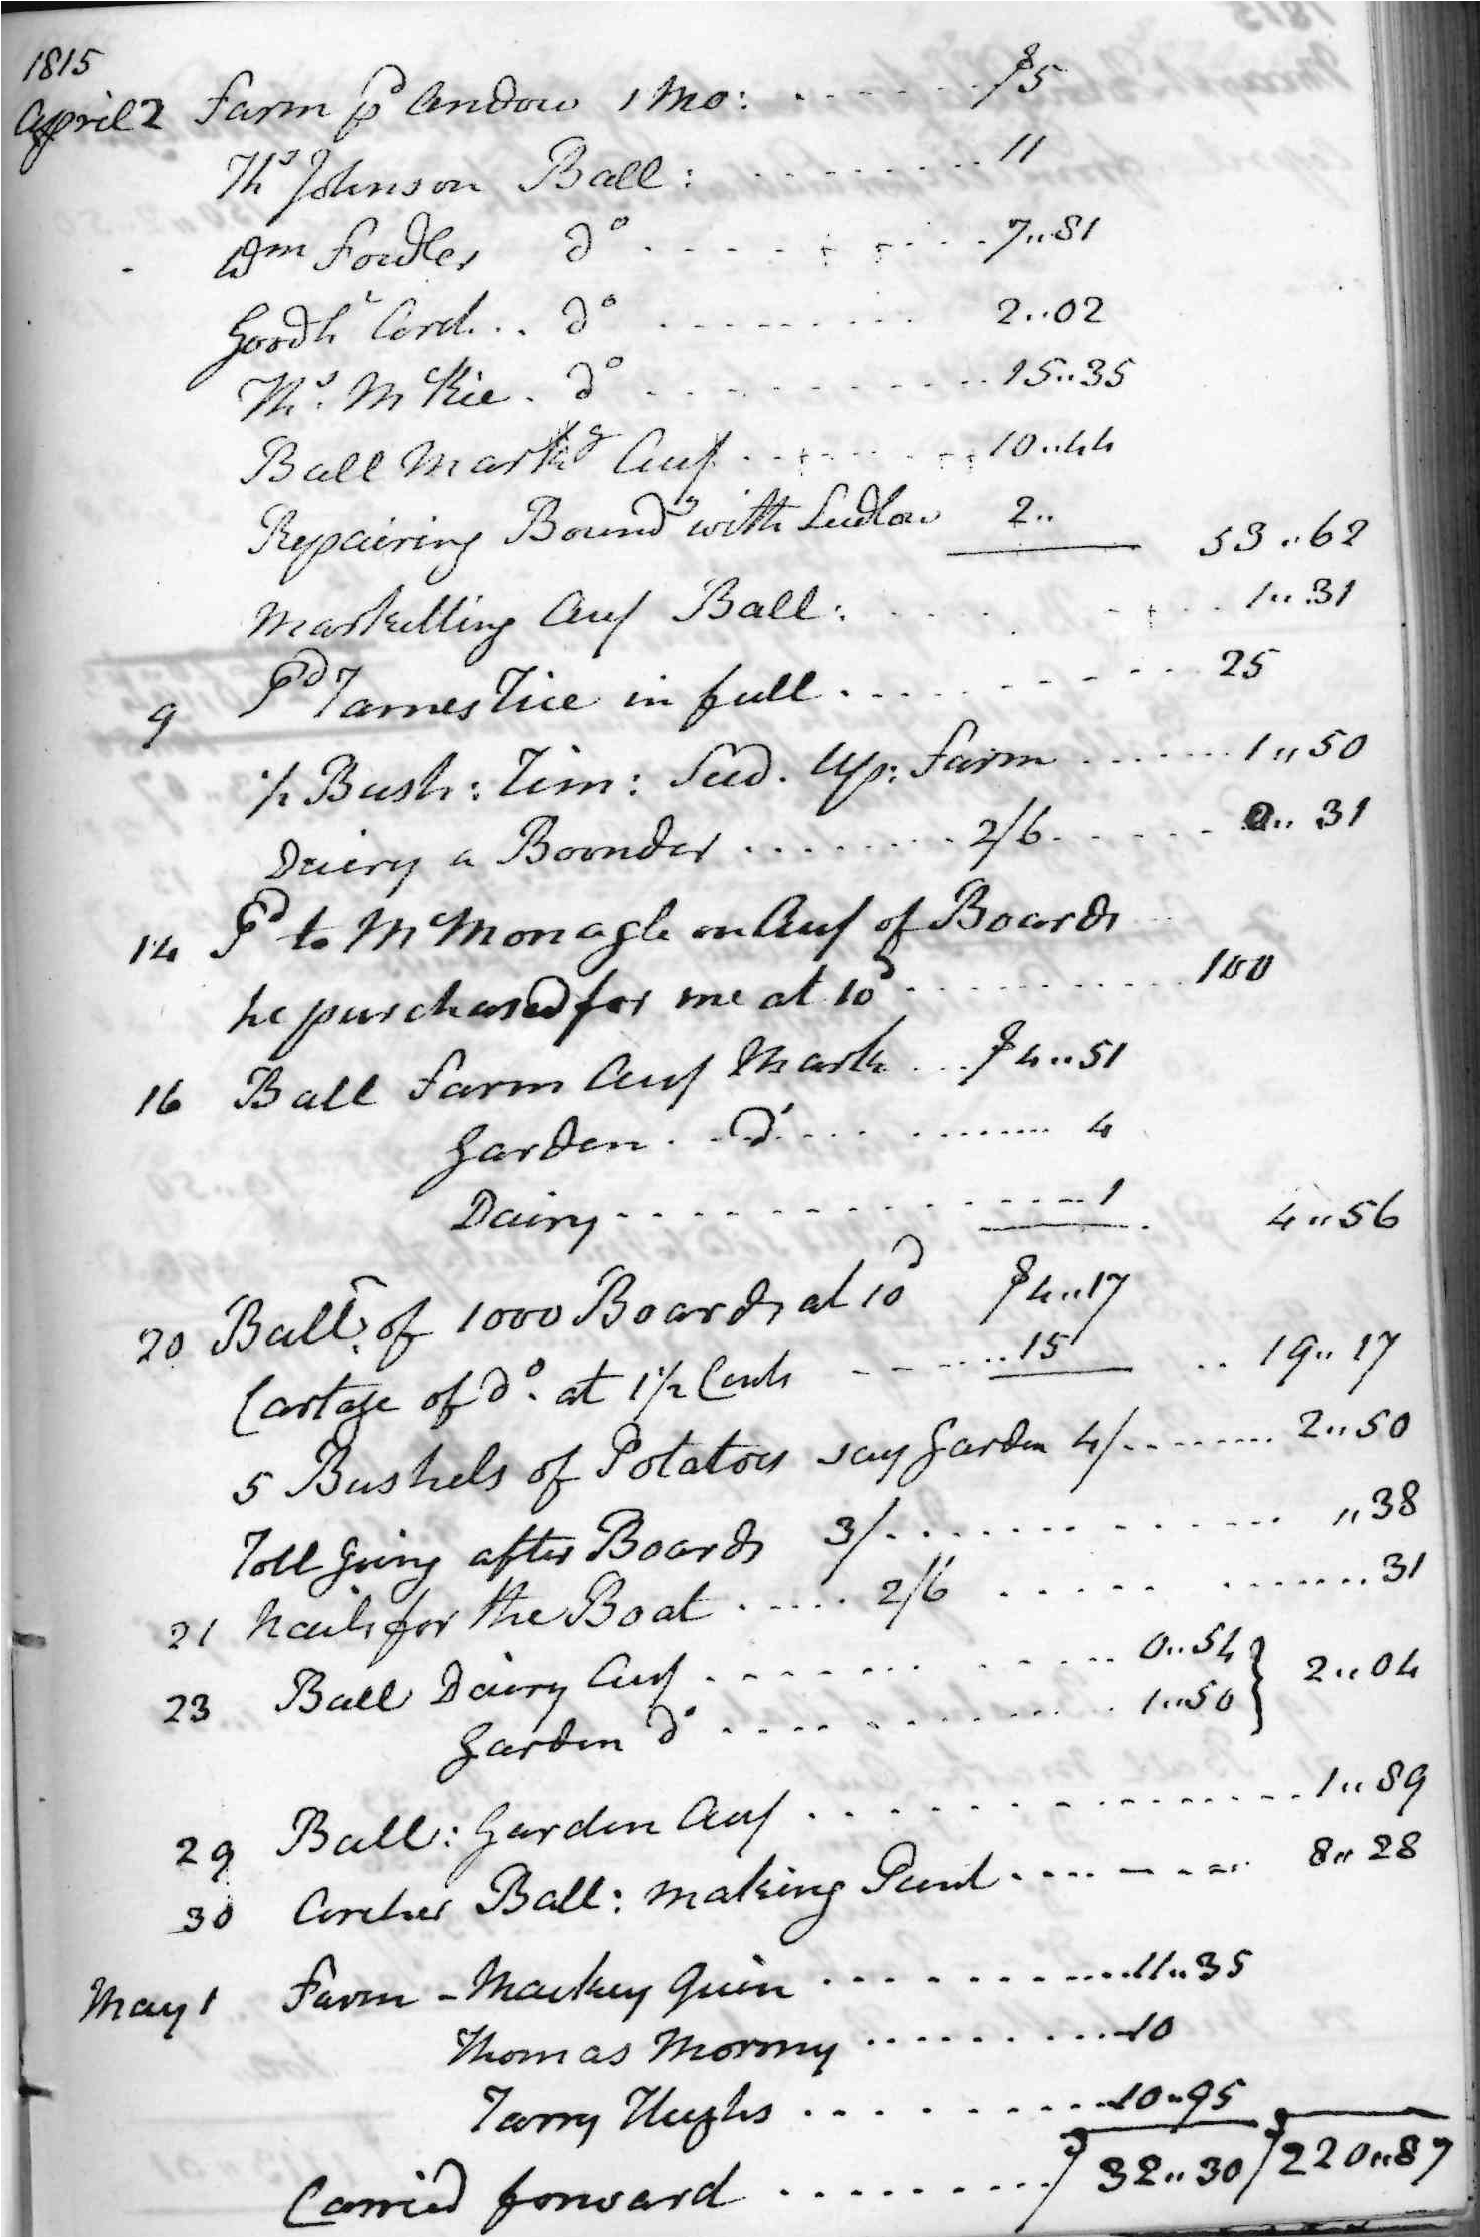 Gouverneur Morris Cash Book, folio 40, right side